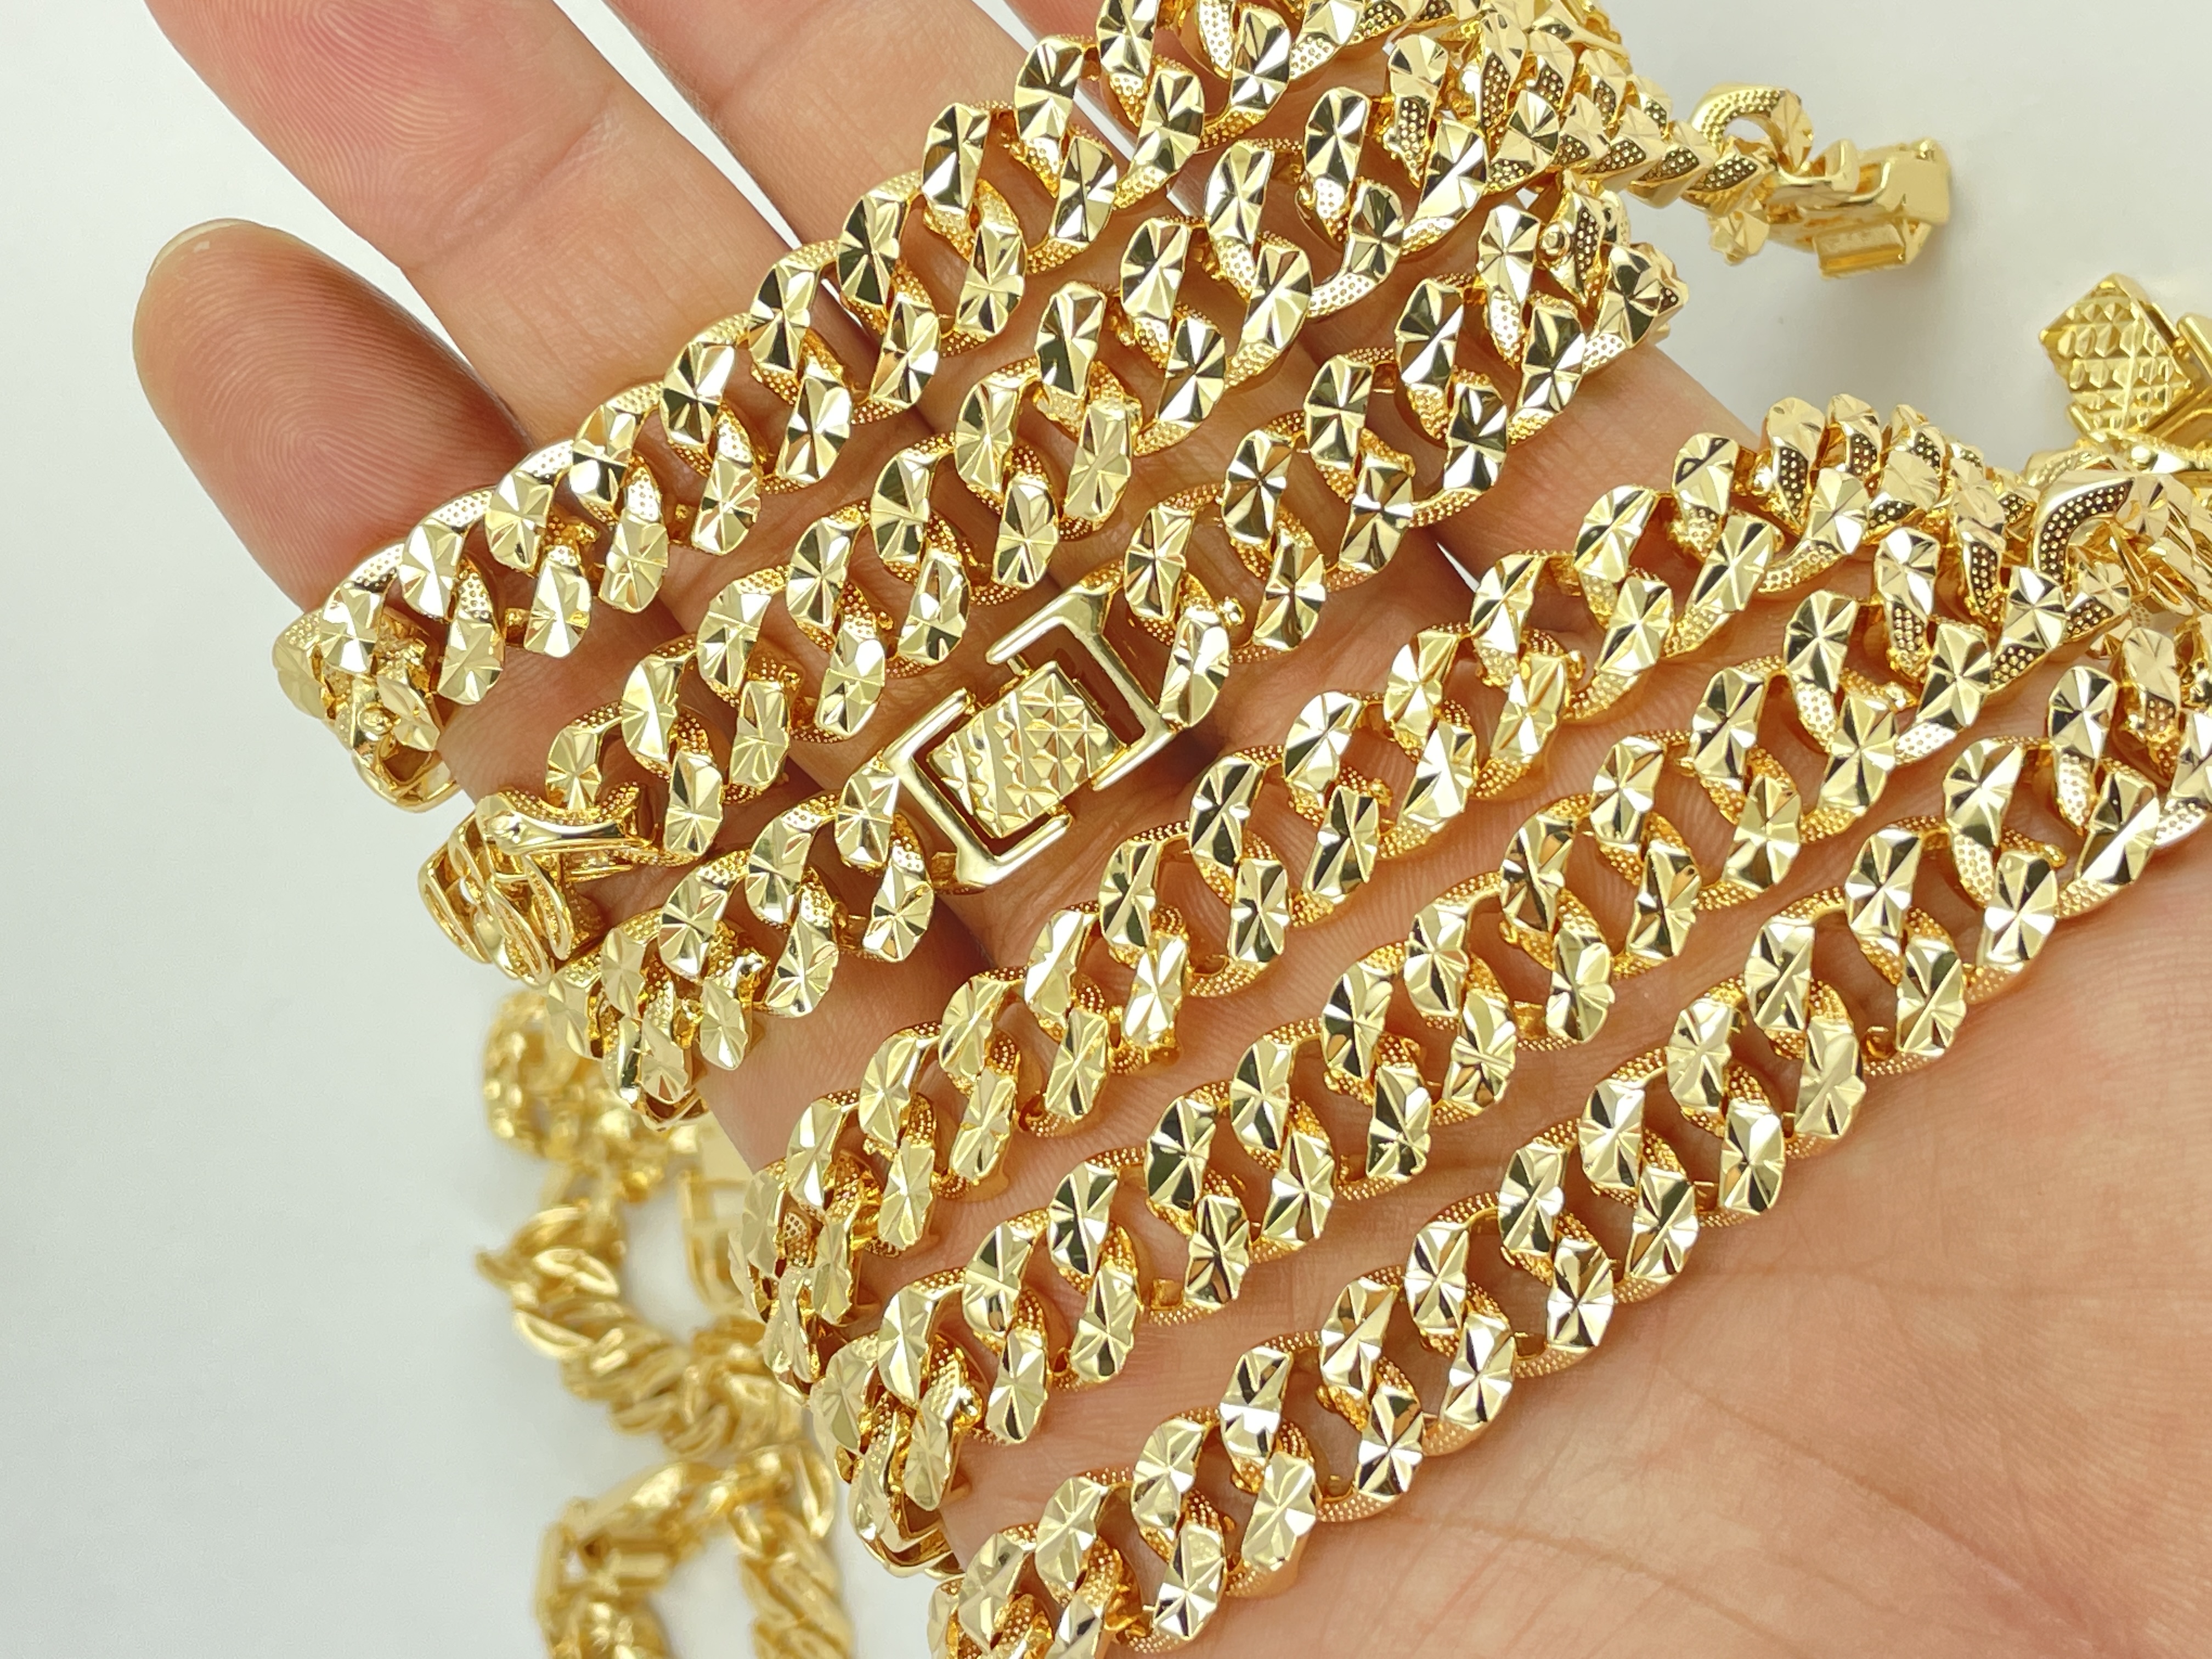 Mạ vàng 18K: Khám phá trang sức đẳng cấp được làm từ chất liệu mạ vàng 18K. Sản phẩm bền vững và đẹp mắt mang đến sự sang trọng và đẳng cấp cho người sử dụng.